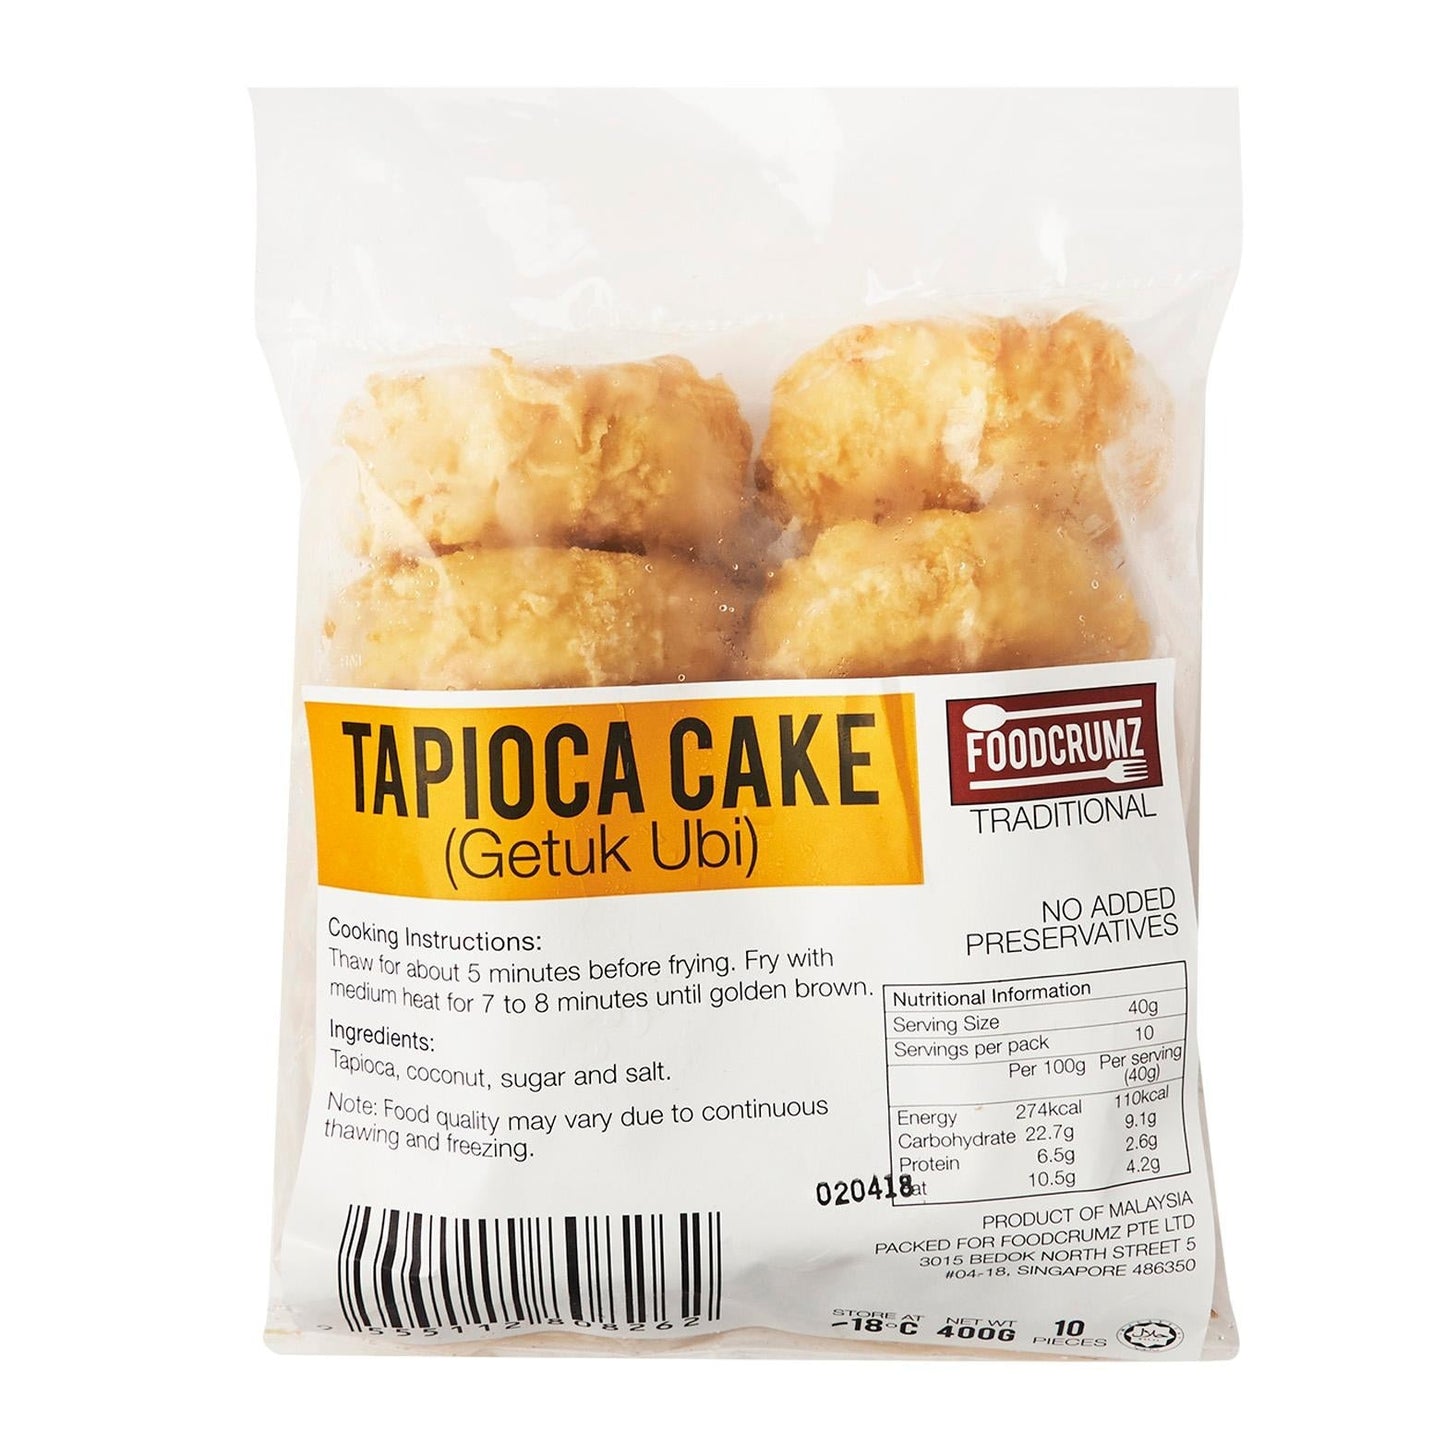 Tapioca Cake /Getuk Ubi